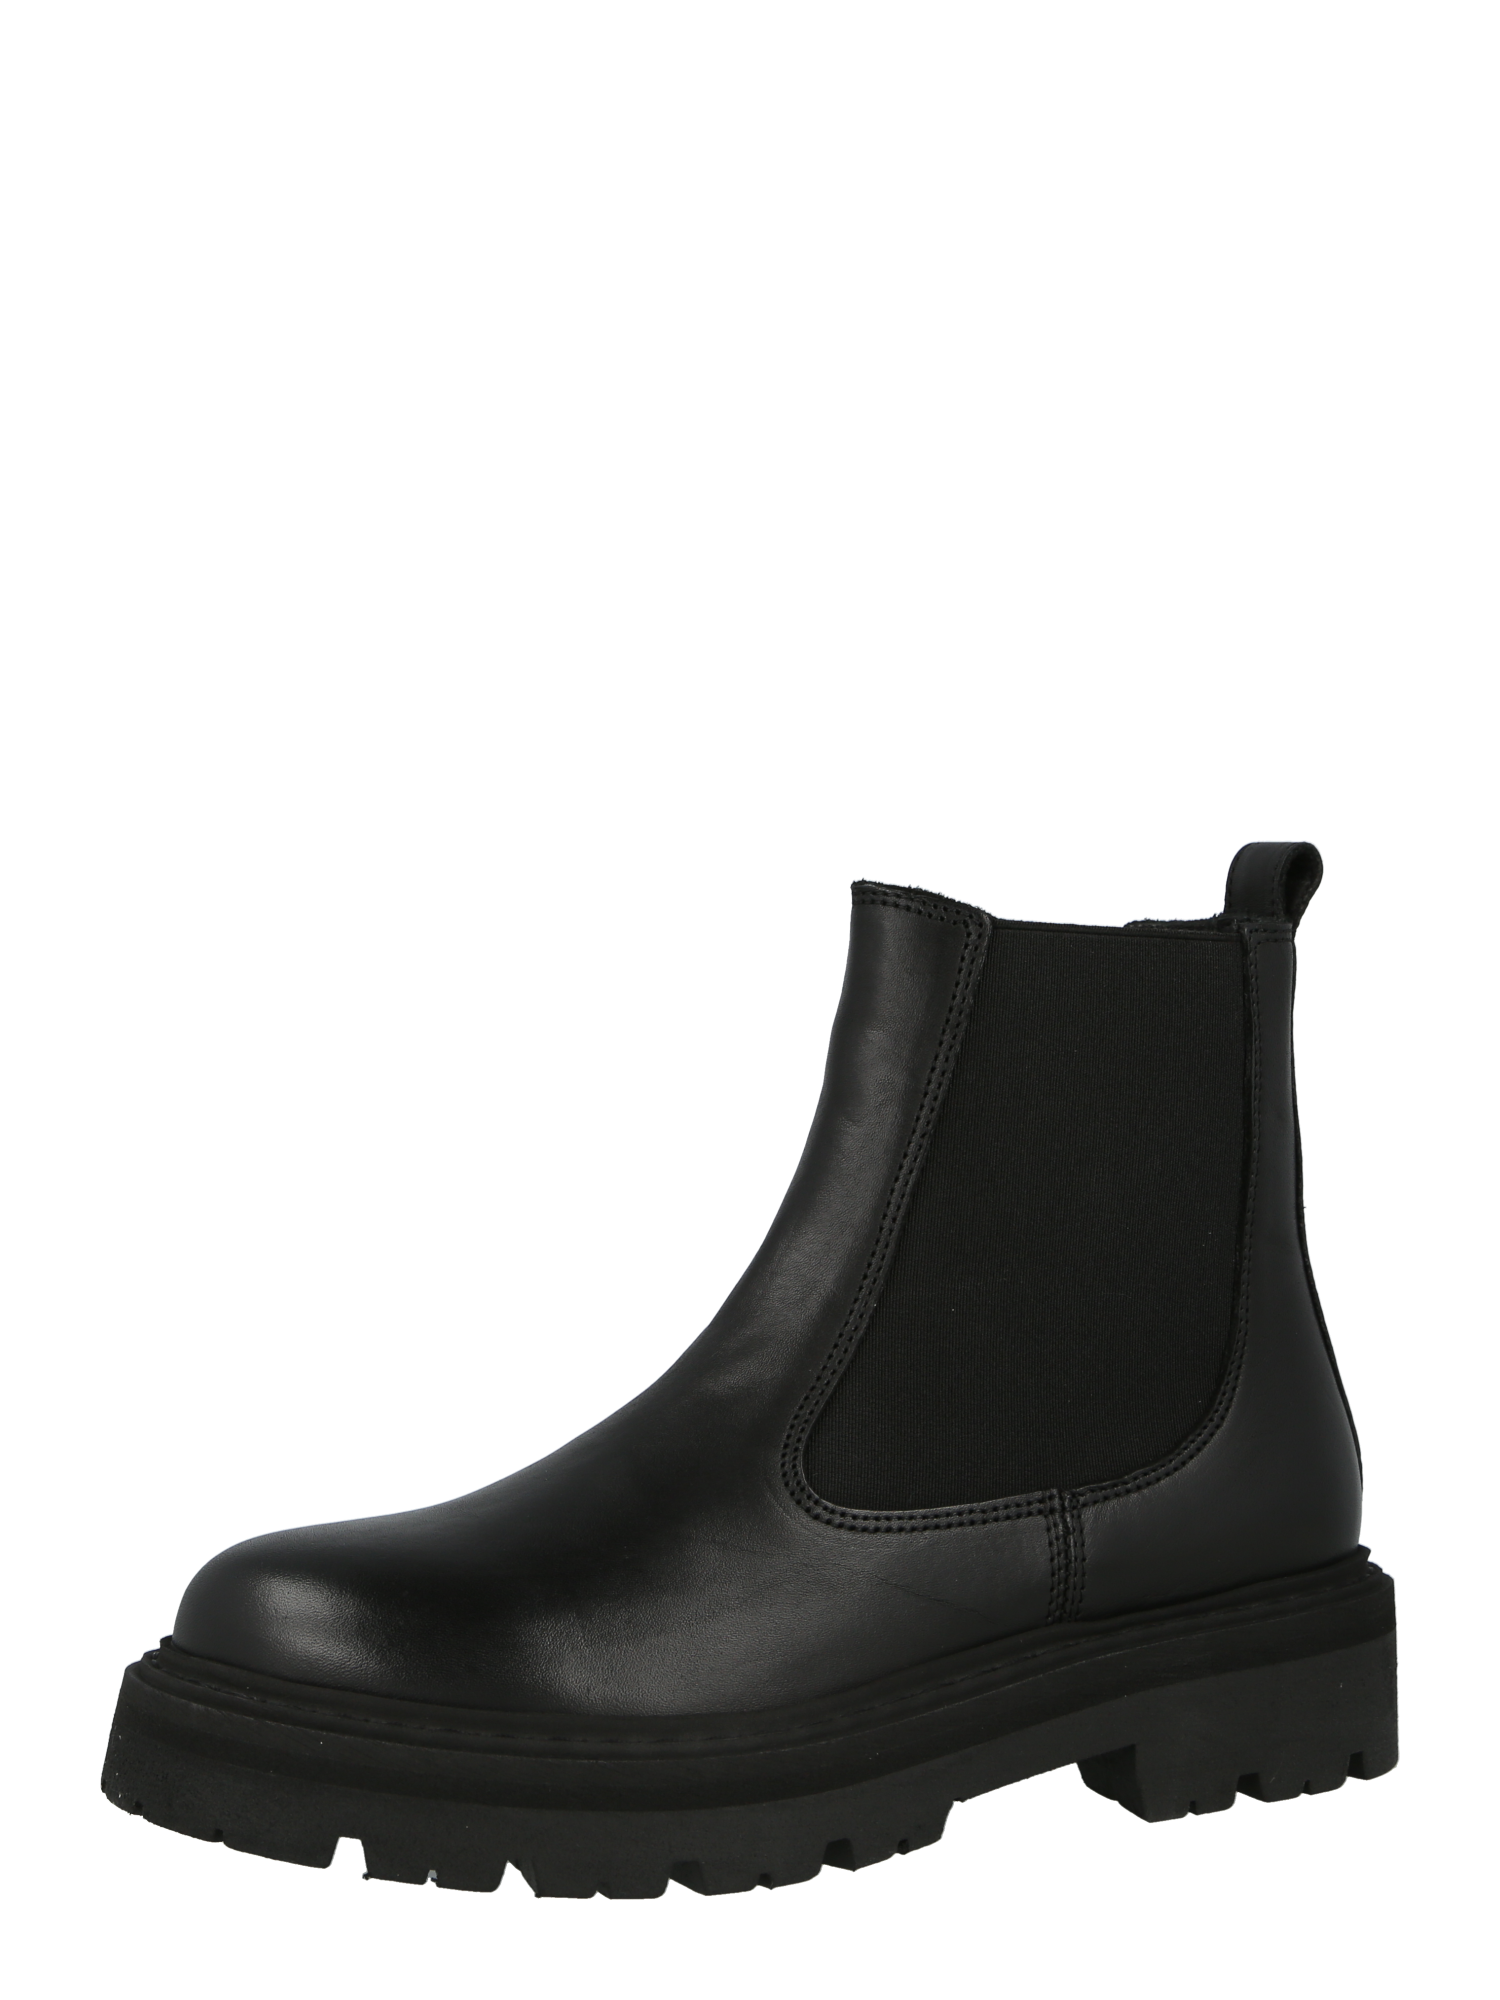 BprQH Buty Garment Project Chelsea Boots Spike w kolorze Czarnym 